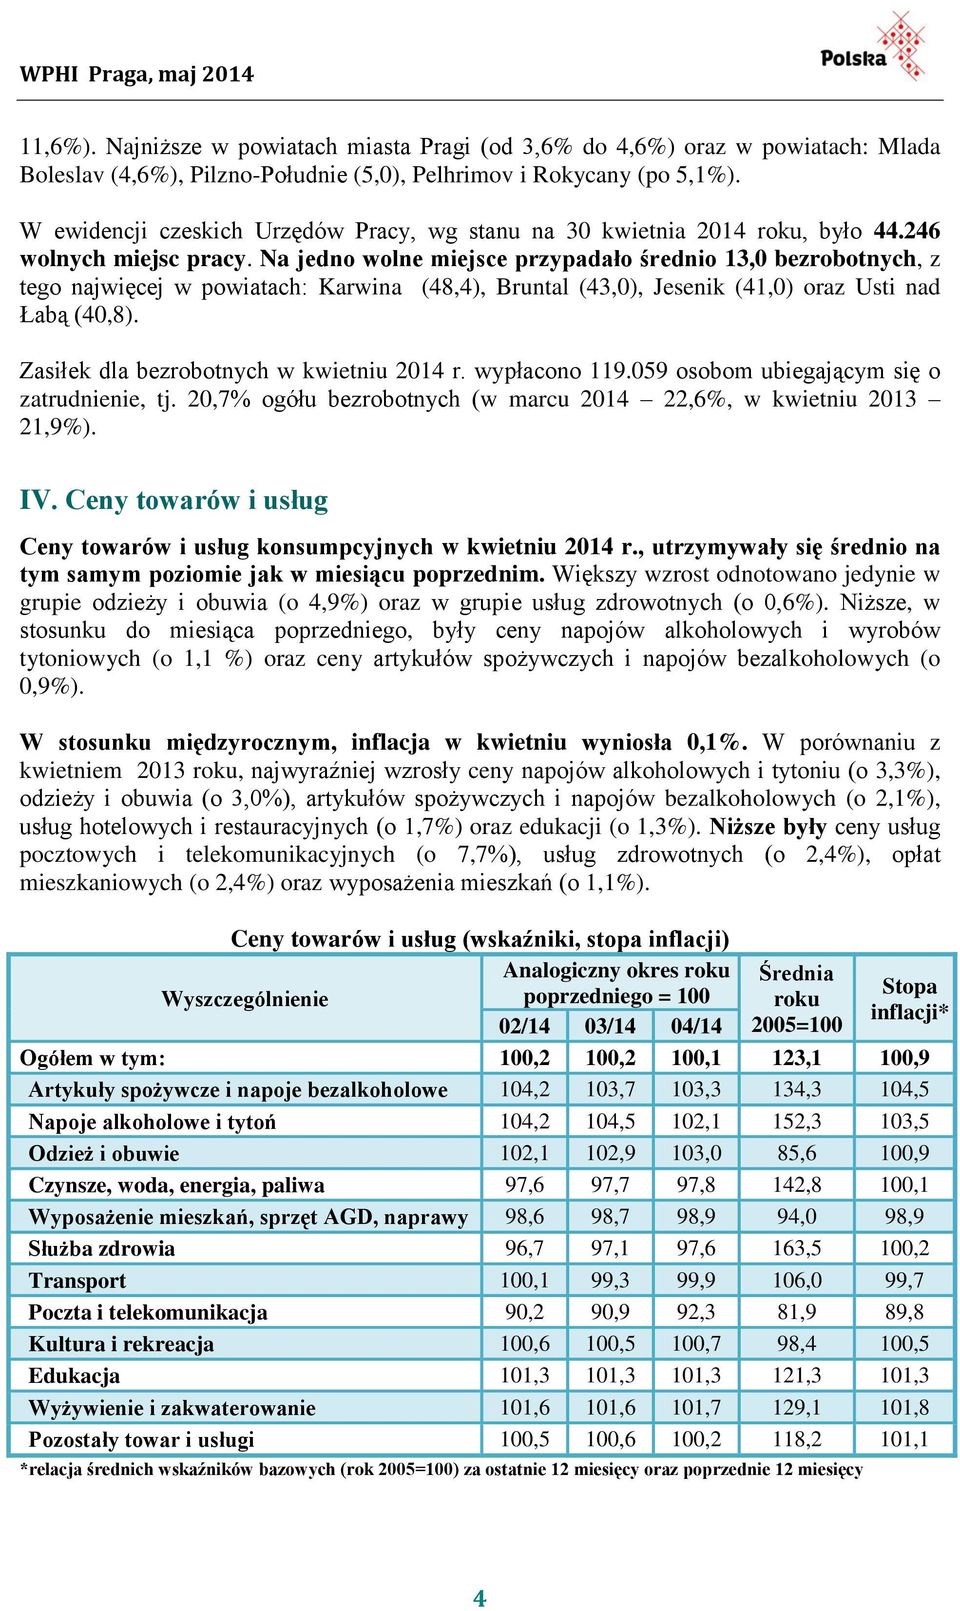 Na jedno wolne miejsce przypadało średnio 13,0 bezrobotnych, z tego najwięcej w powiatach: Karwina (48,4), Bruntal (43,0), Jesenik (41,0) oraz Usti nad Łabą (40,8).